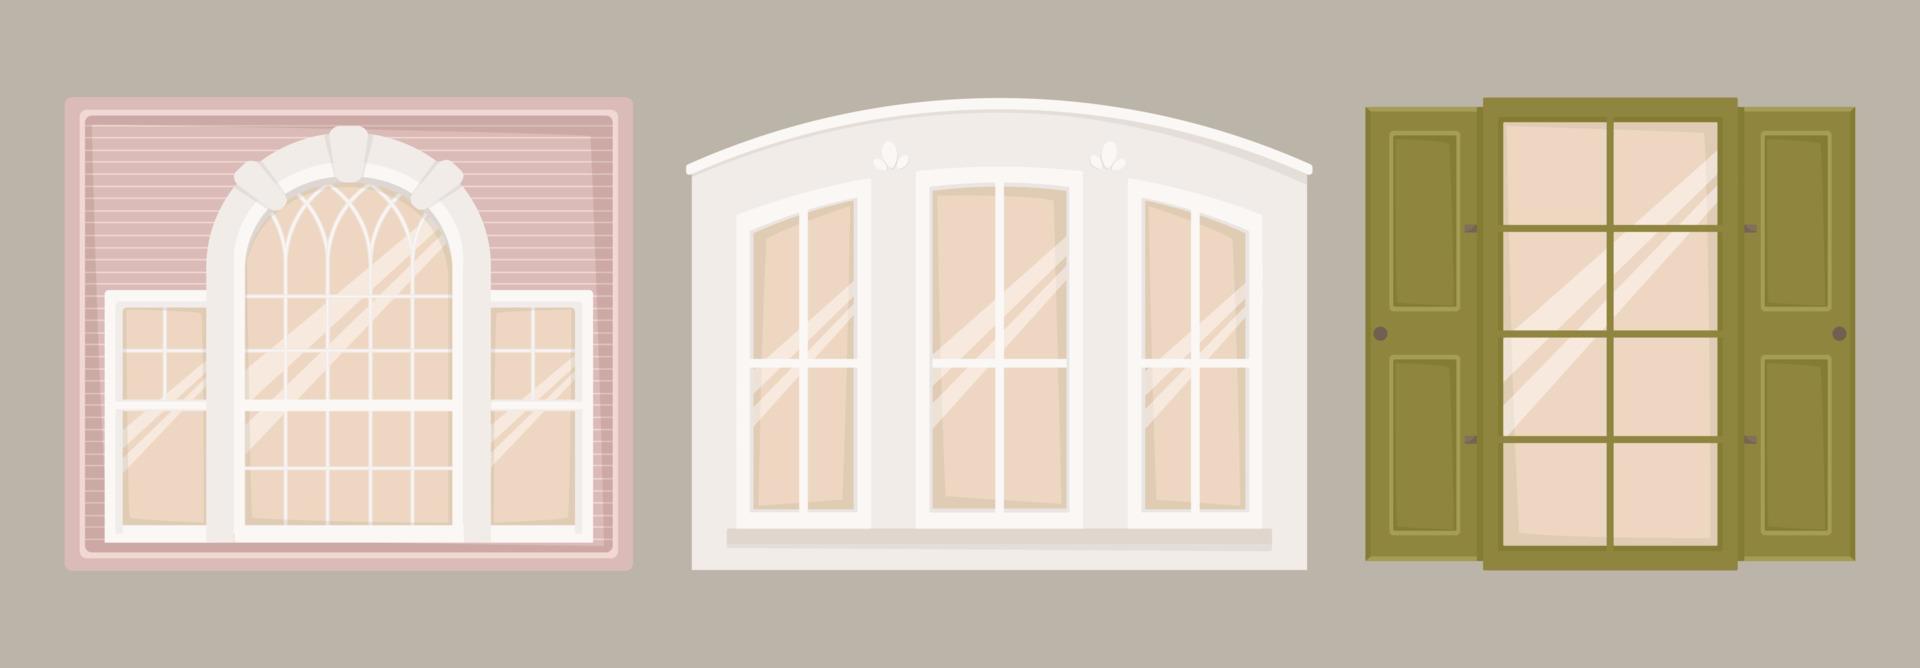 illustrazione vettoriale set di immagini architettoniche. finestre di varie forme e dimensioni in stile classico. esterno e arredamento di edifici.